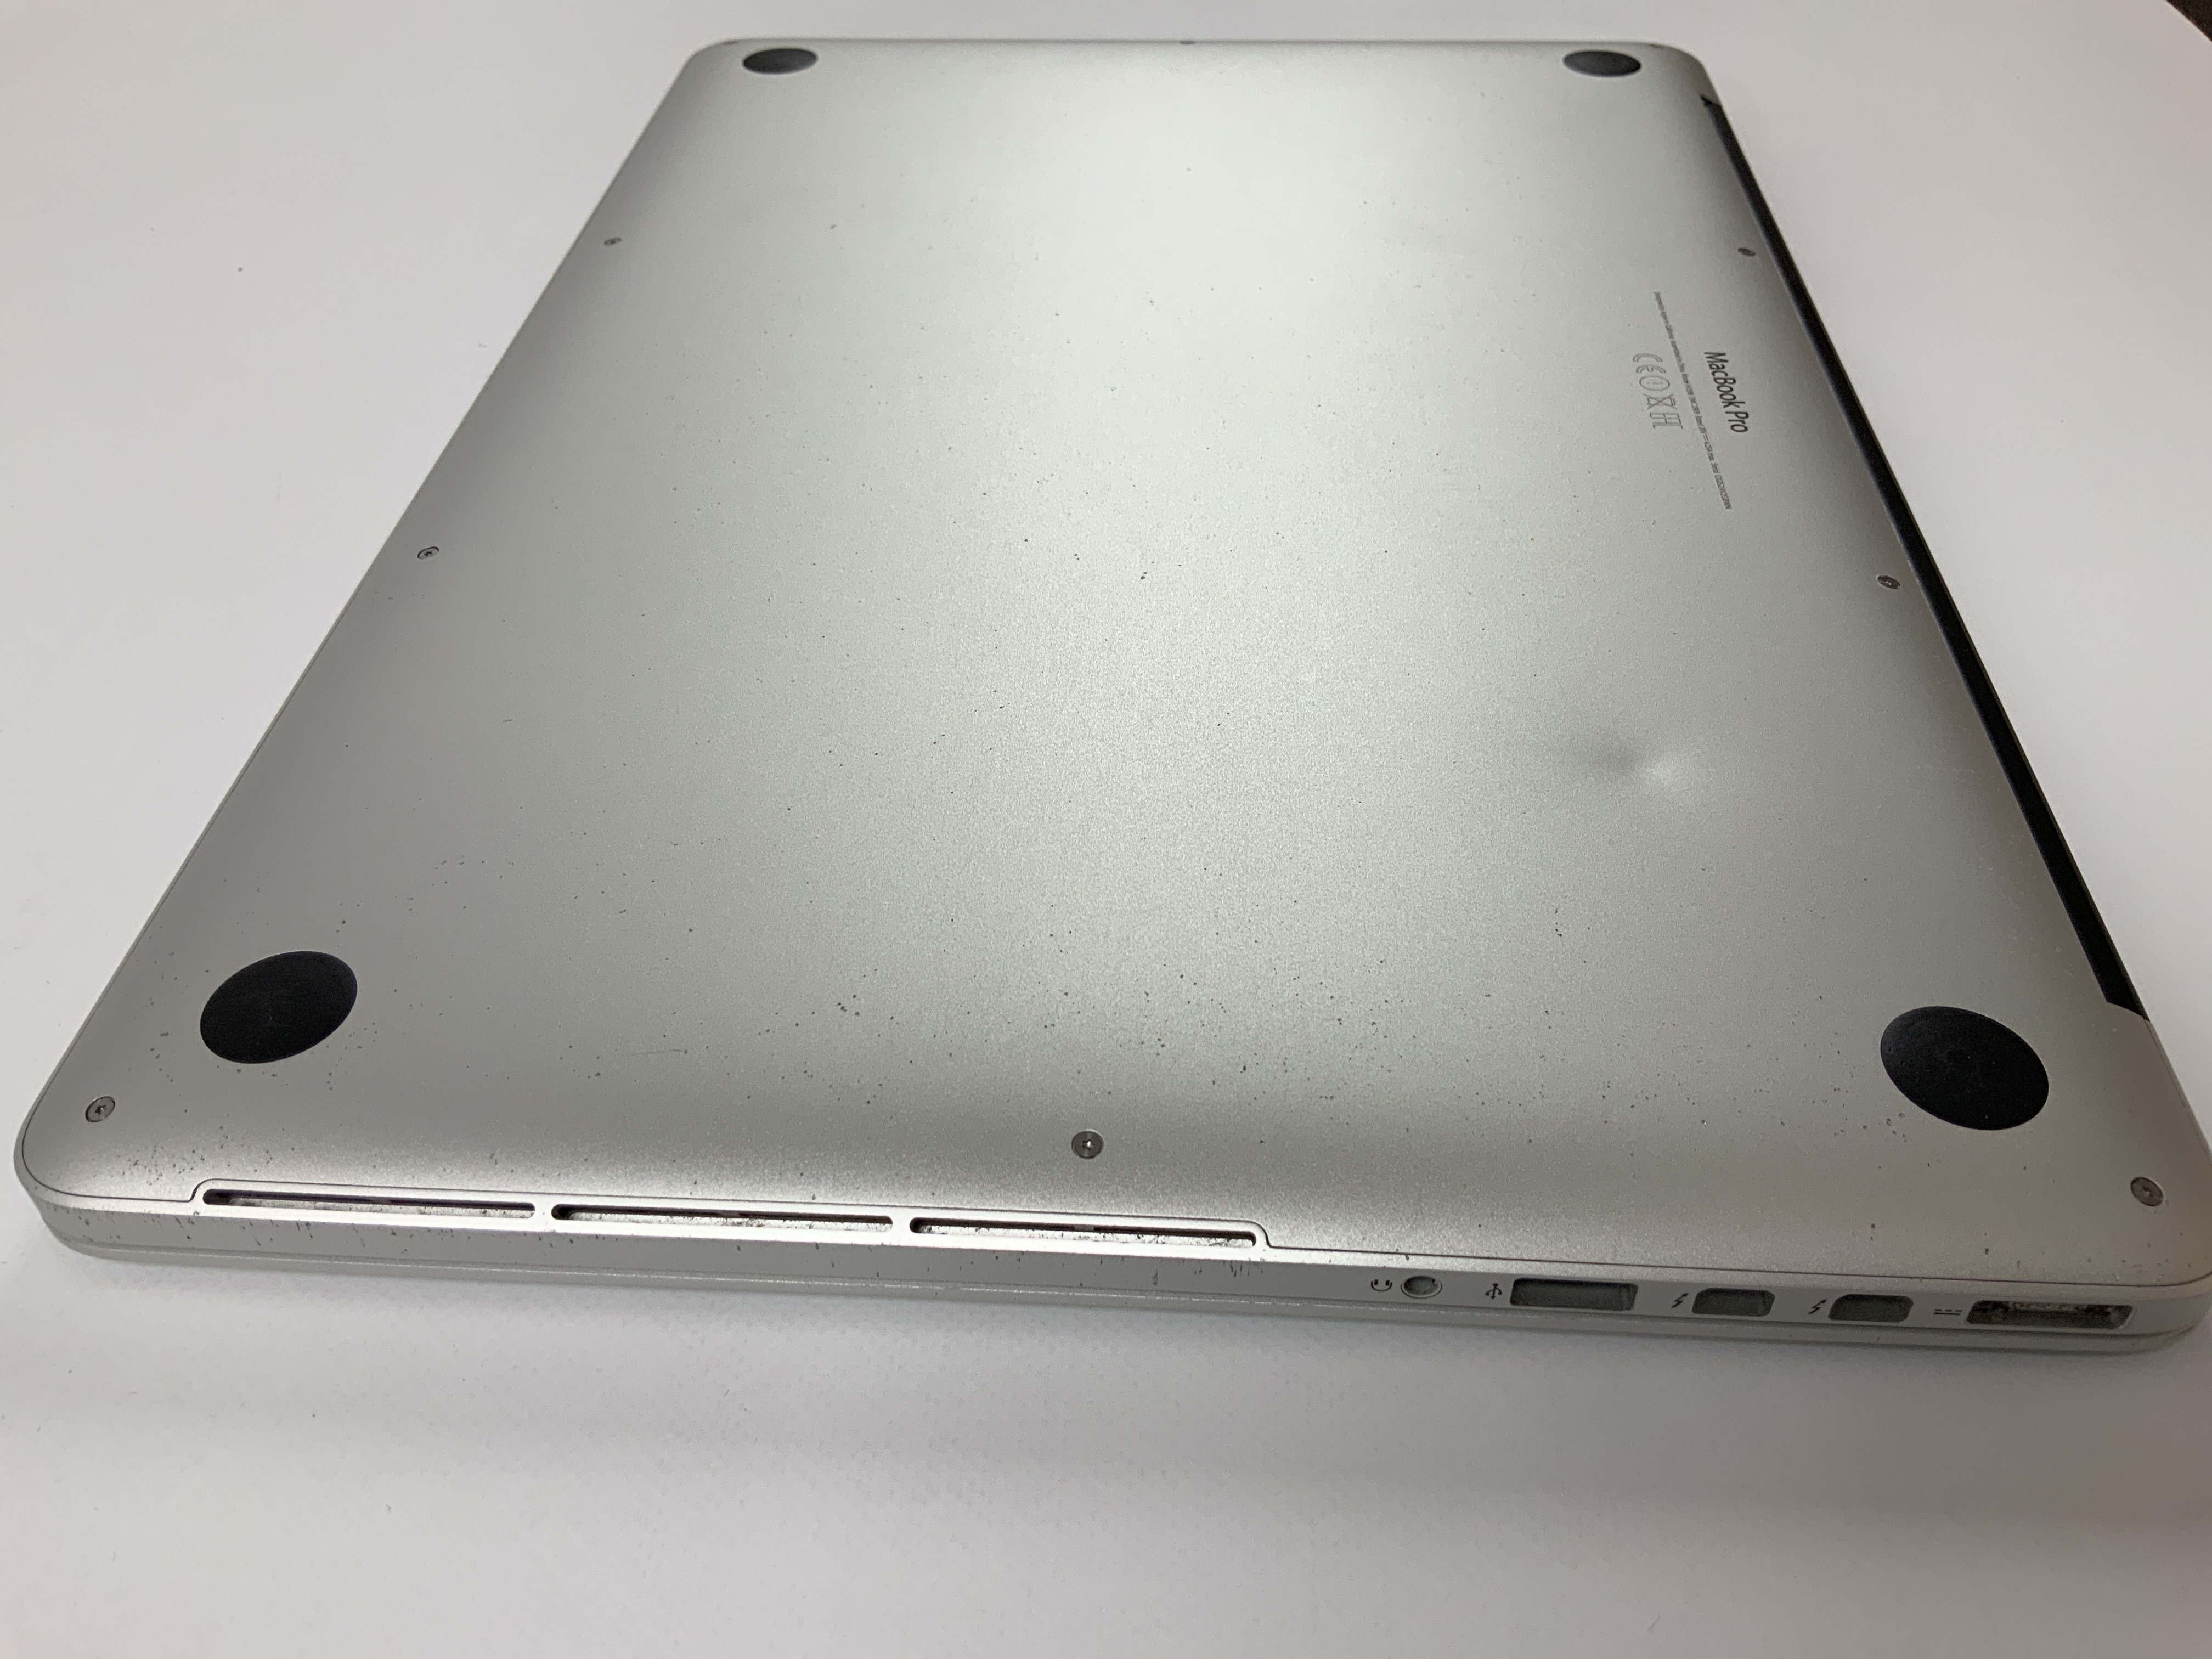 MacBook Pro Retina 15" Mid 2015 (Intel Quad-Core i7 2.5 GHz 16 GB RAM 256 GB SSD), Intel Quad-Core i7 2.5 GHz, 16 GB RAM, 256 GB SSD, Bild 5